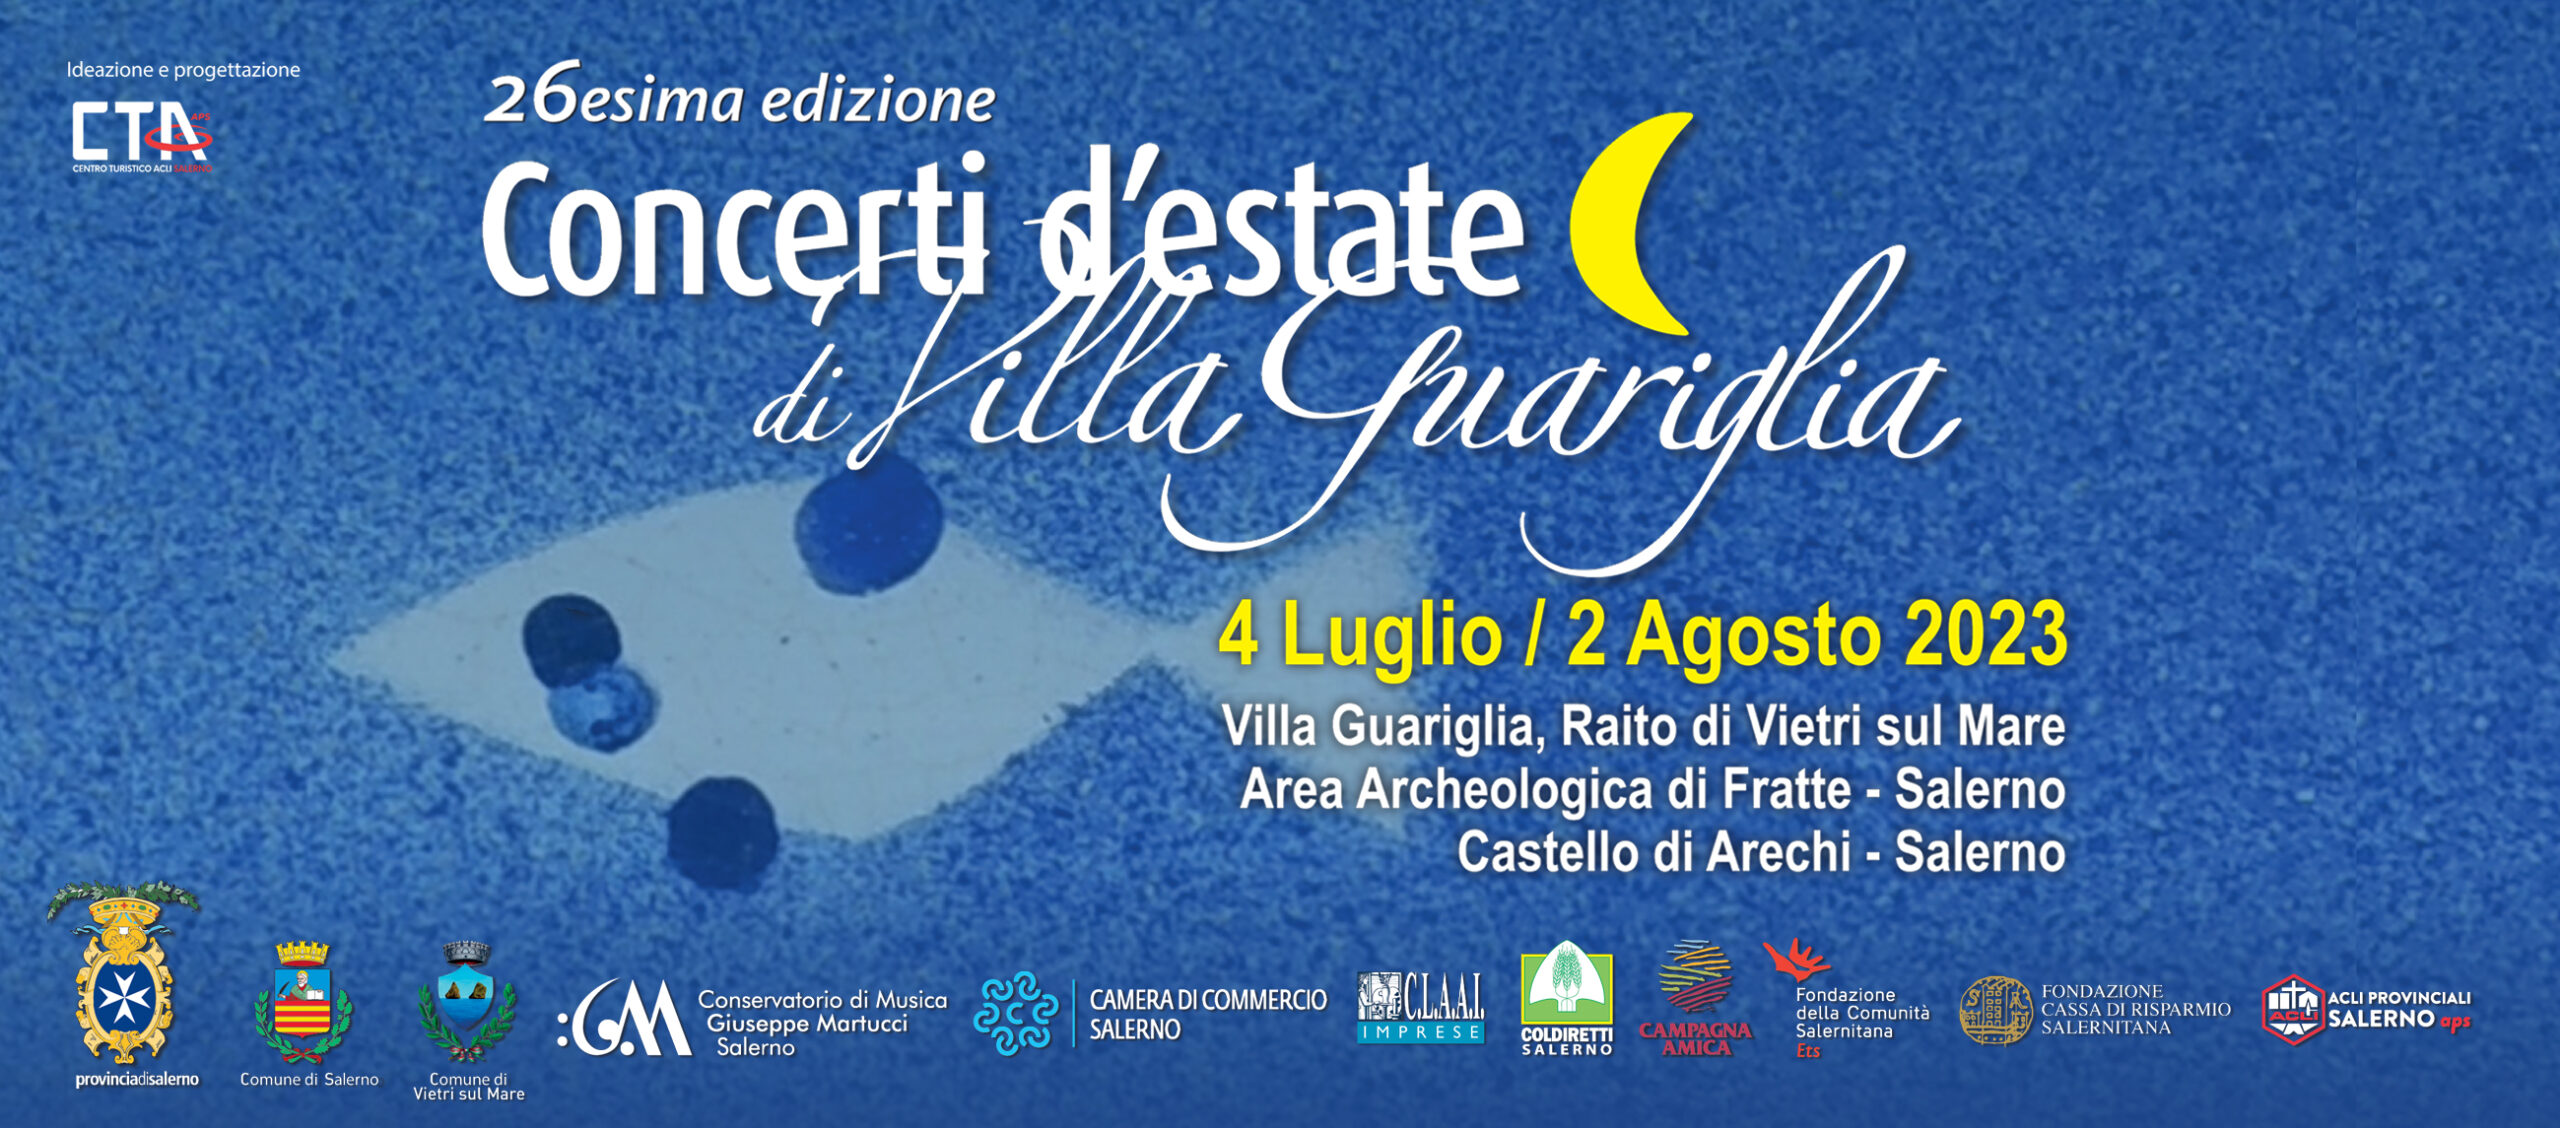 Concerti d'estate di Villa Guariglia, si presenta a Salerno la 26esima  edizione - Ildenaro.it